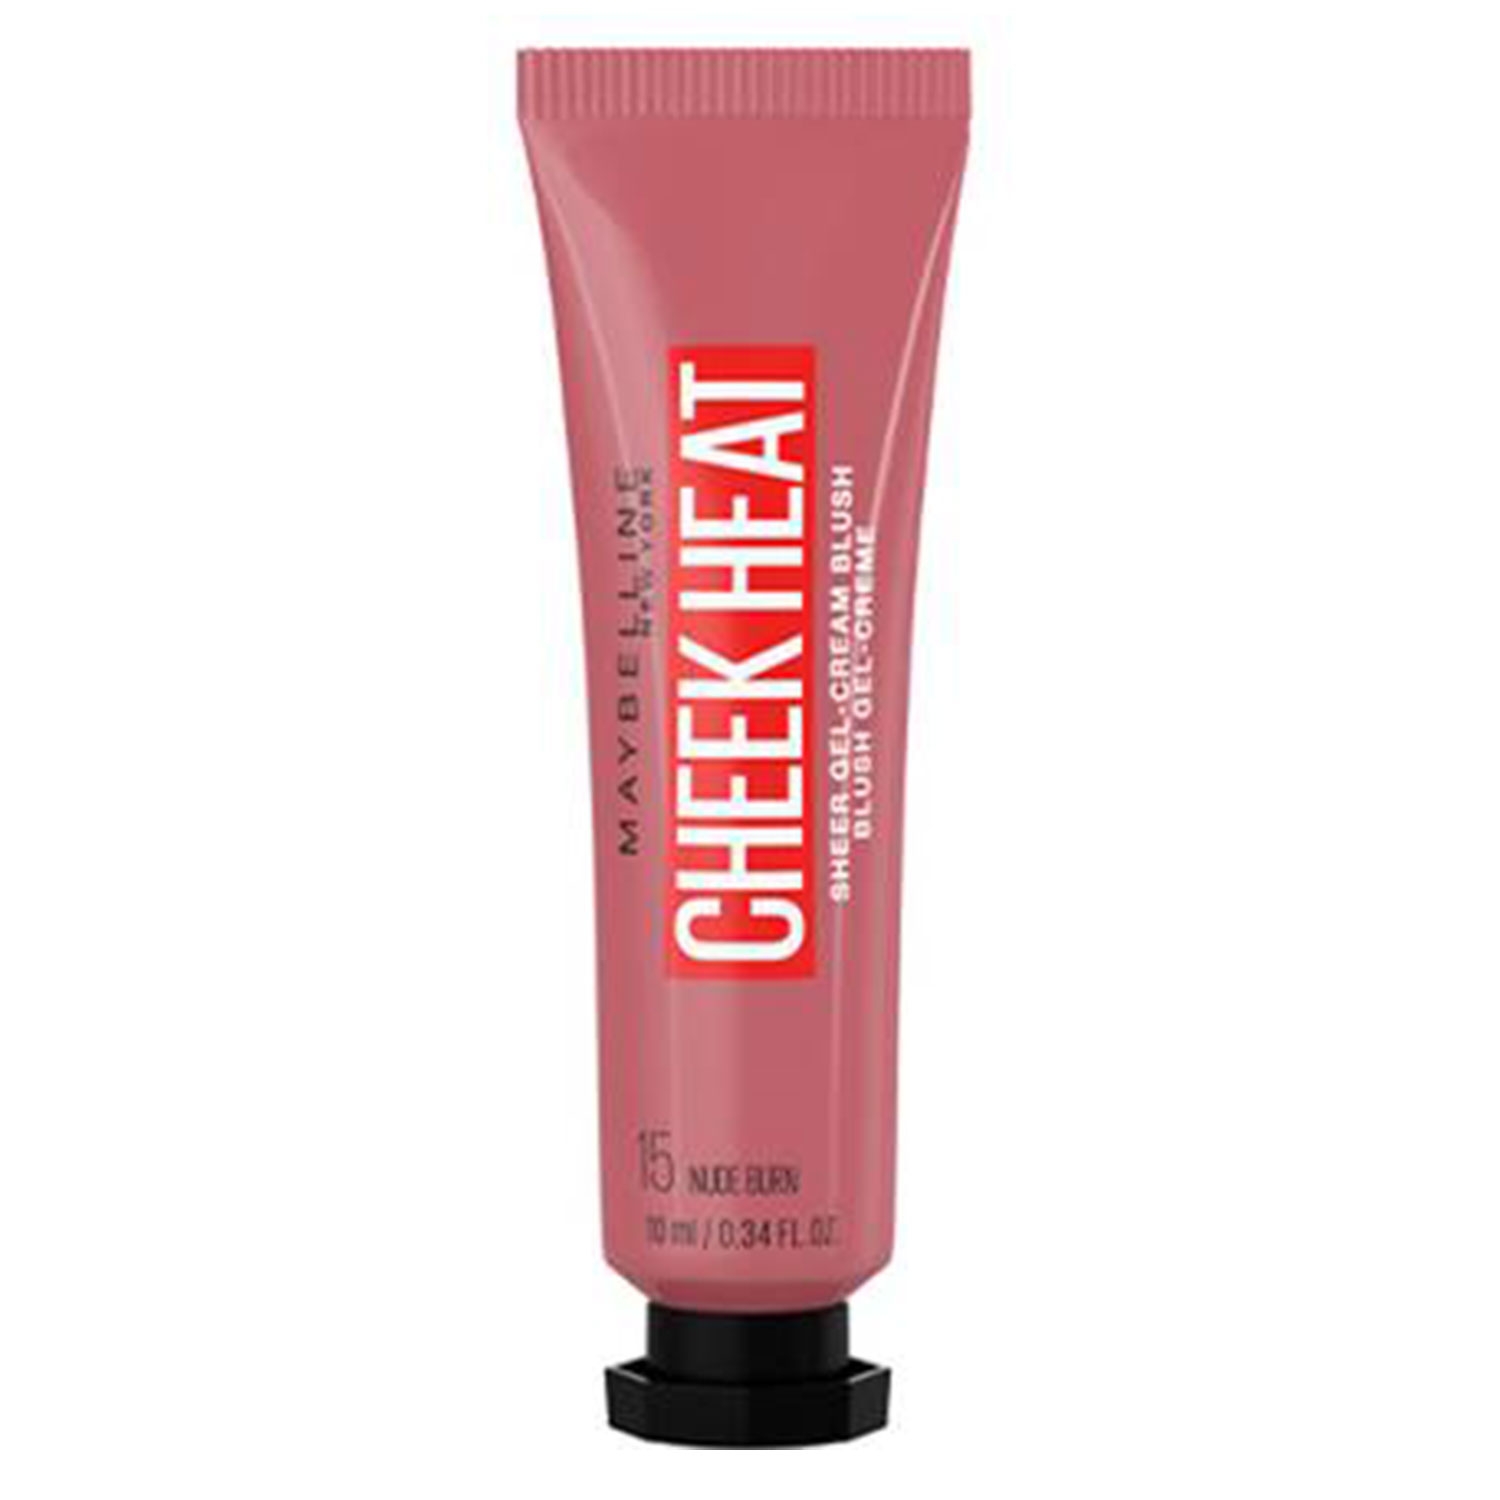 Produktbild von Maybelline NY Cheeks - Cheek Heat Rouge 15 Nude Burn